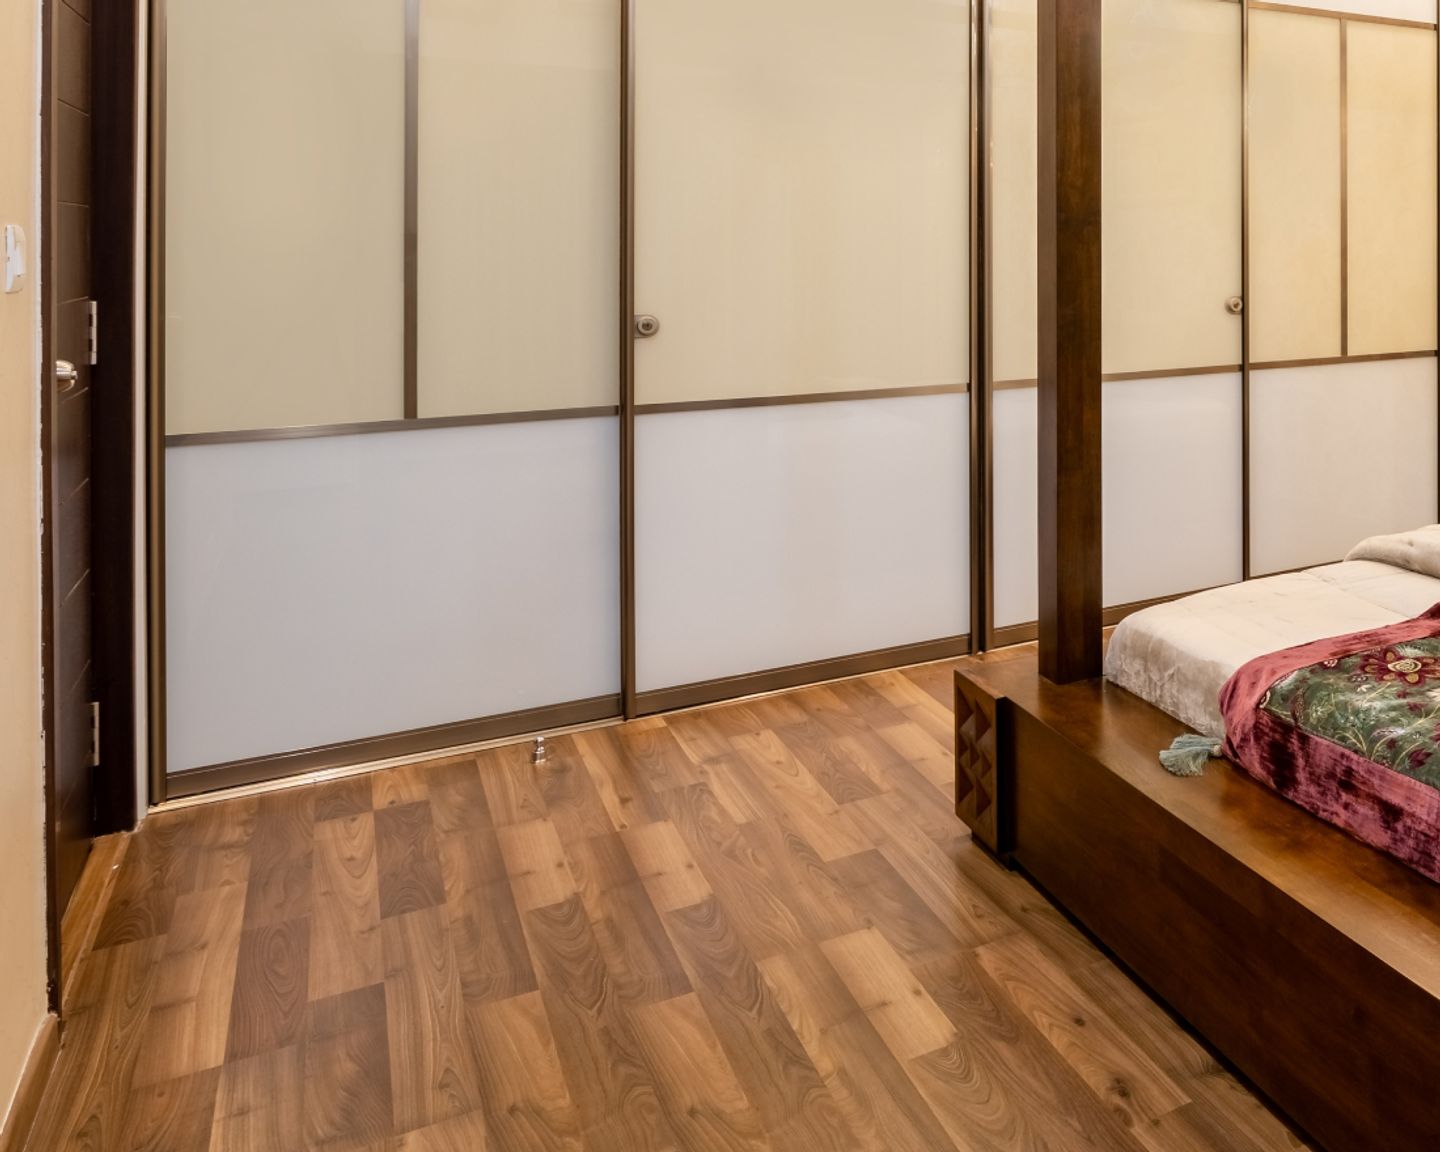 Wooden Textured Bedroom Tiles - Livspace